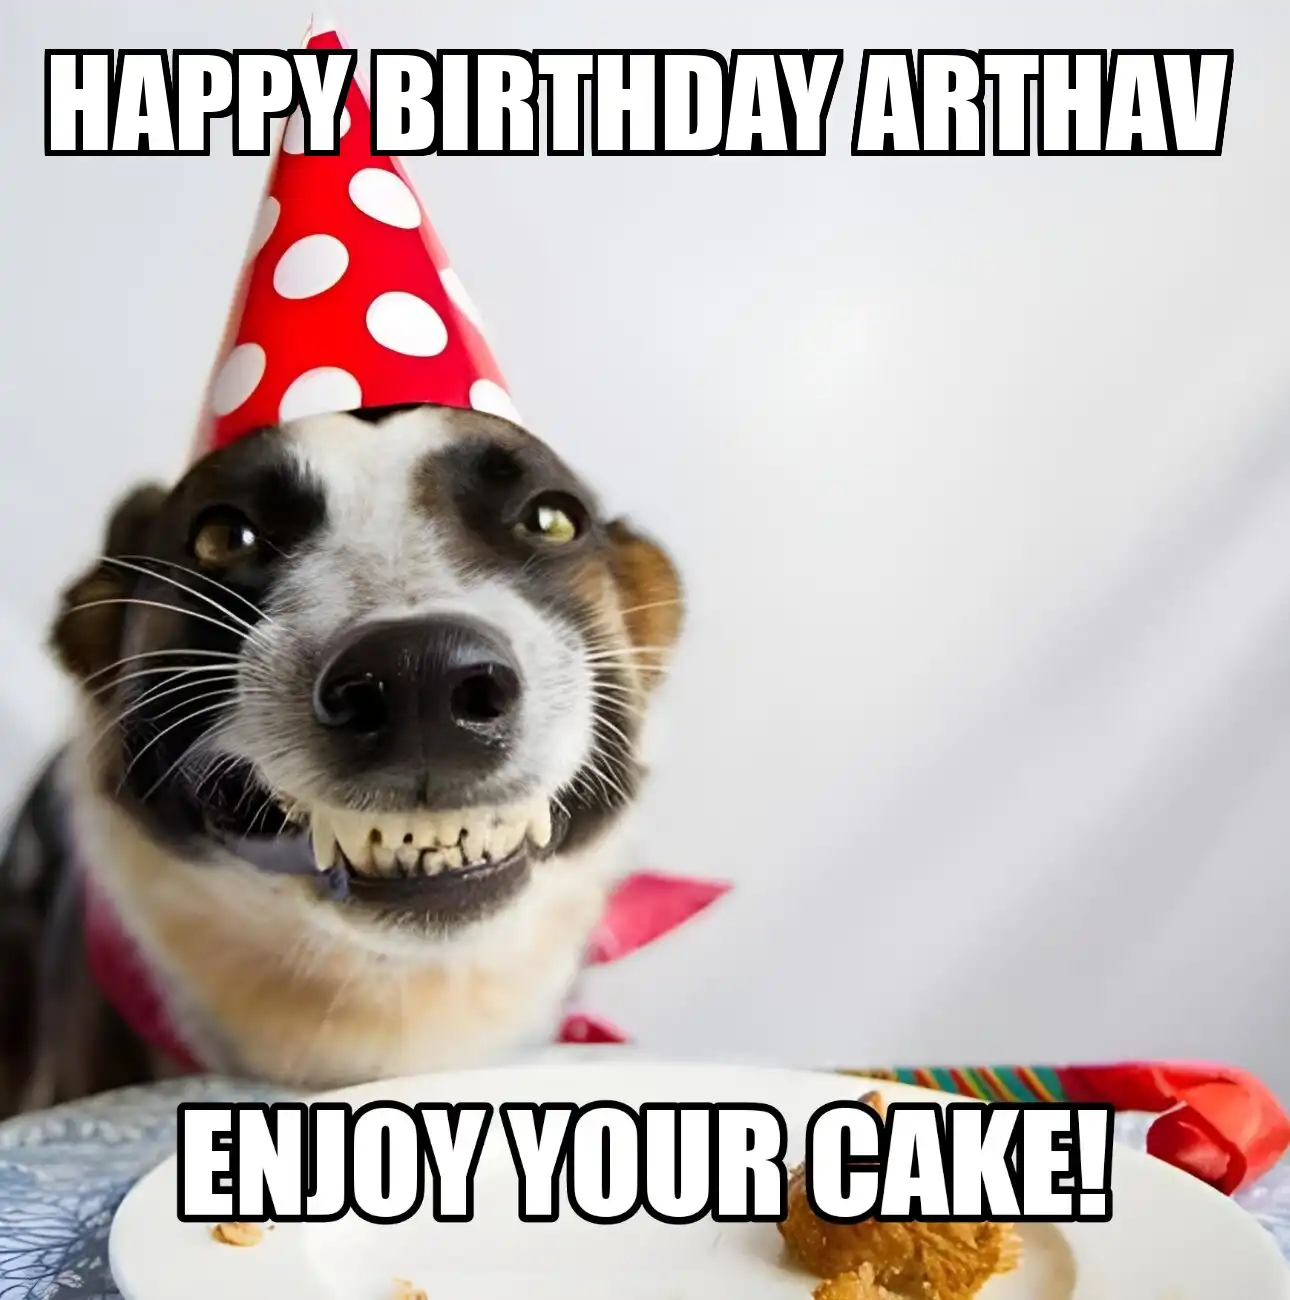 Happy Birthday Arthav Enjoy Your Cake Dog Meme